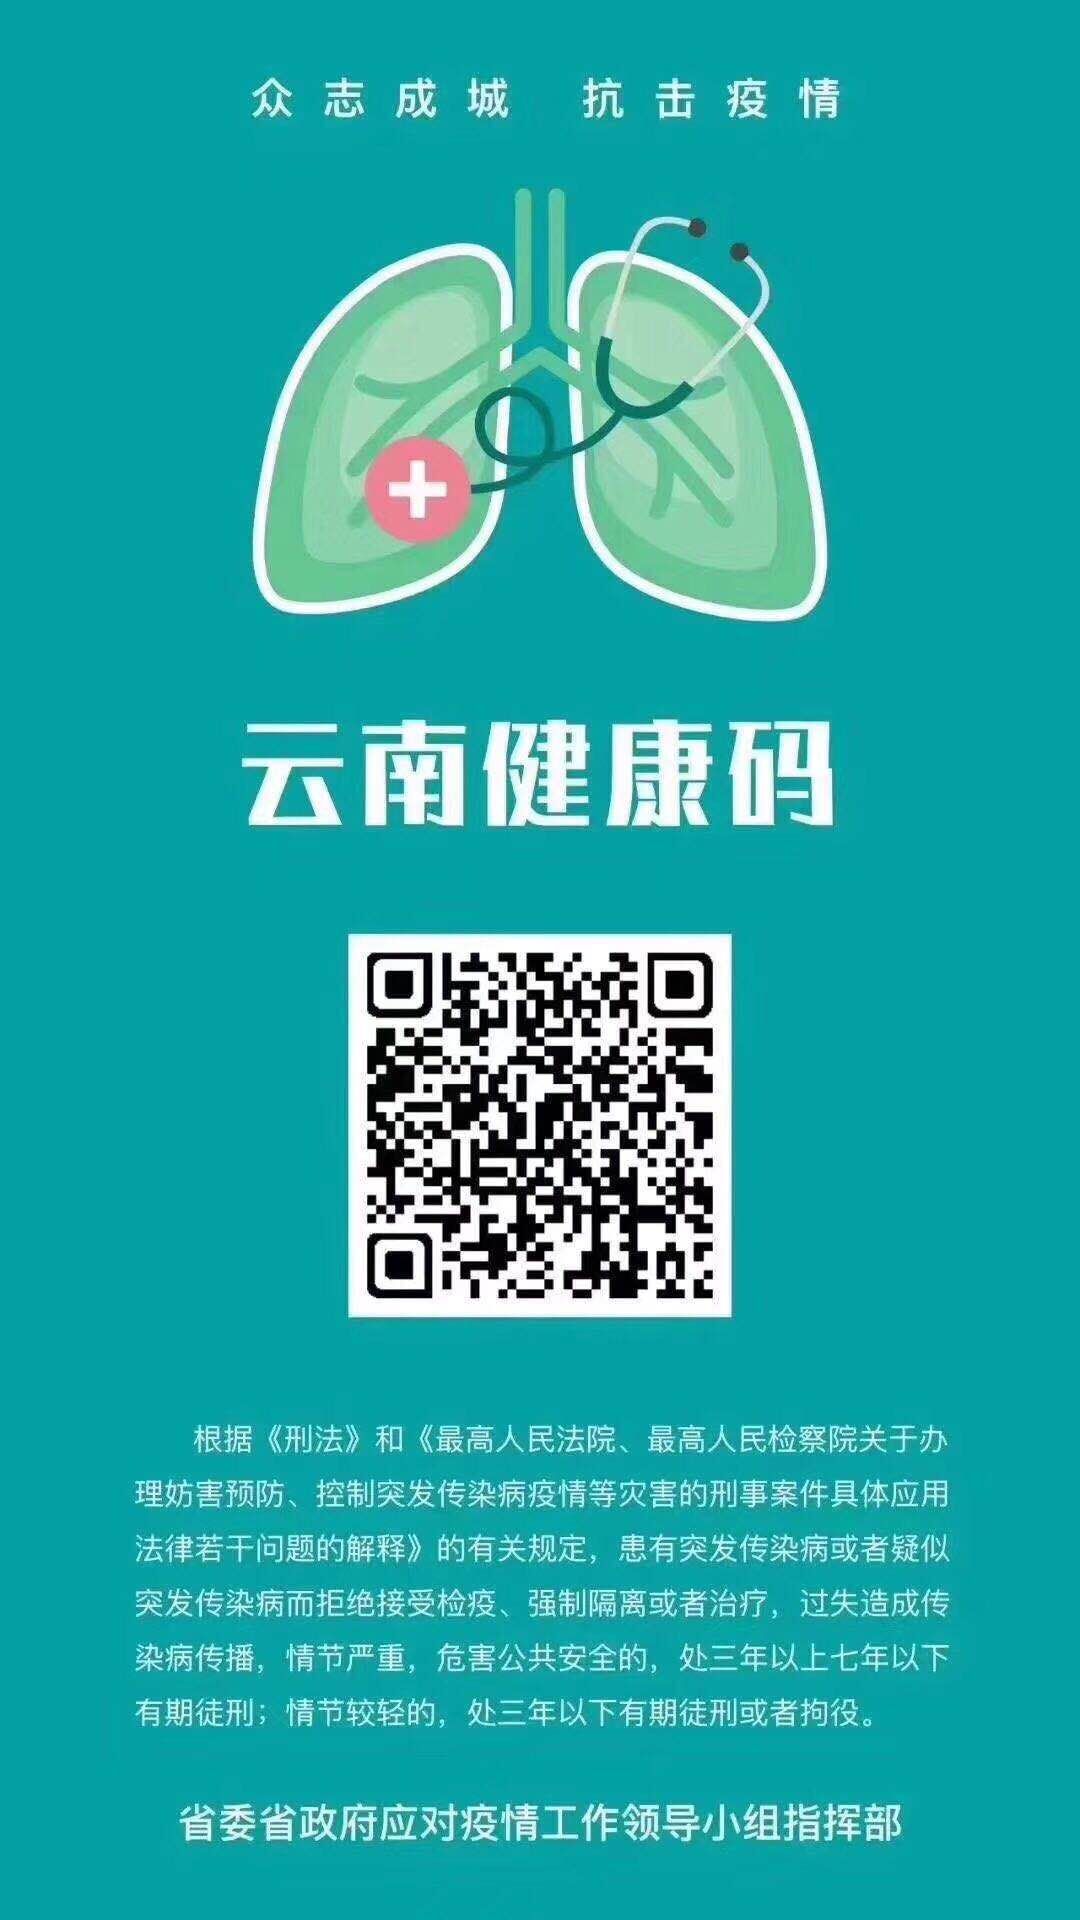 2020年度医师资格考试昆明考点关于启用云南健康码的通知公告